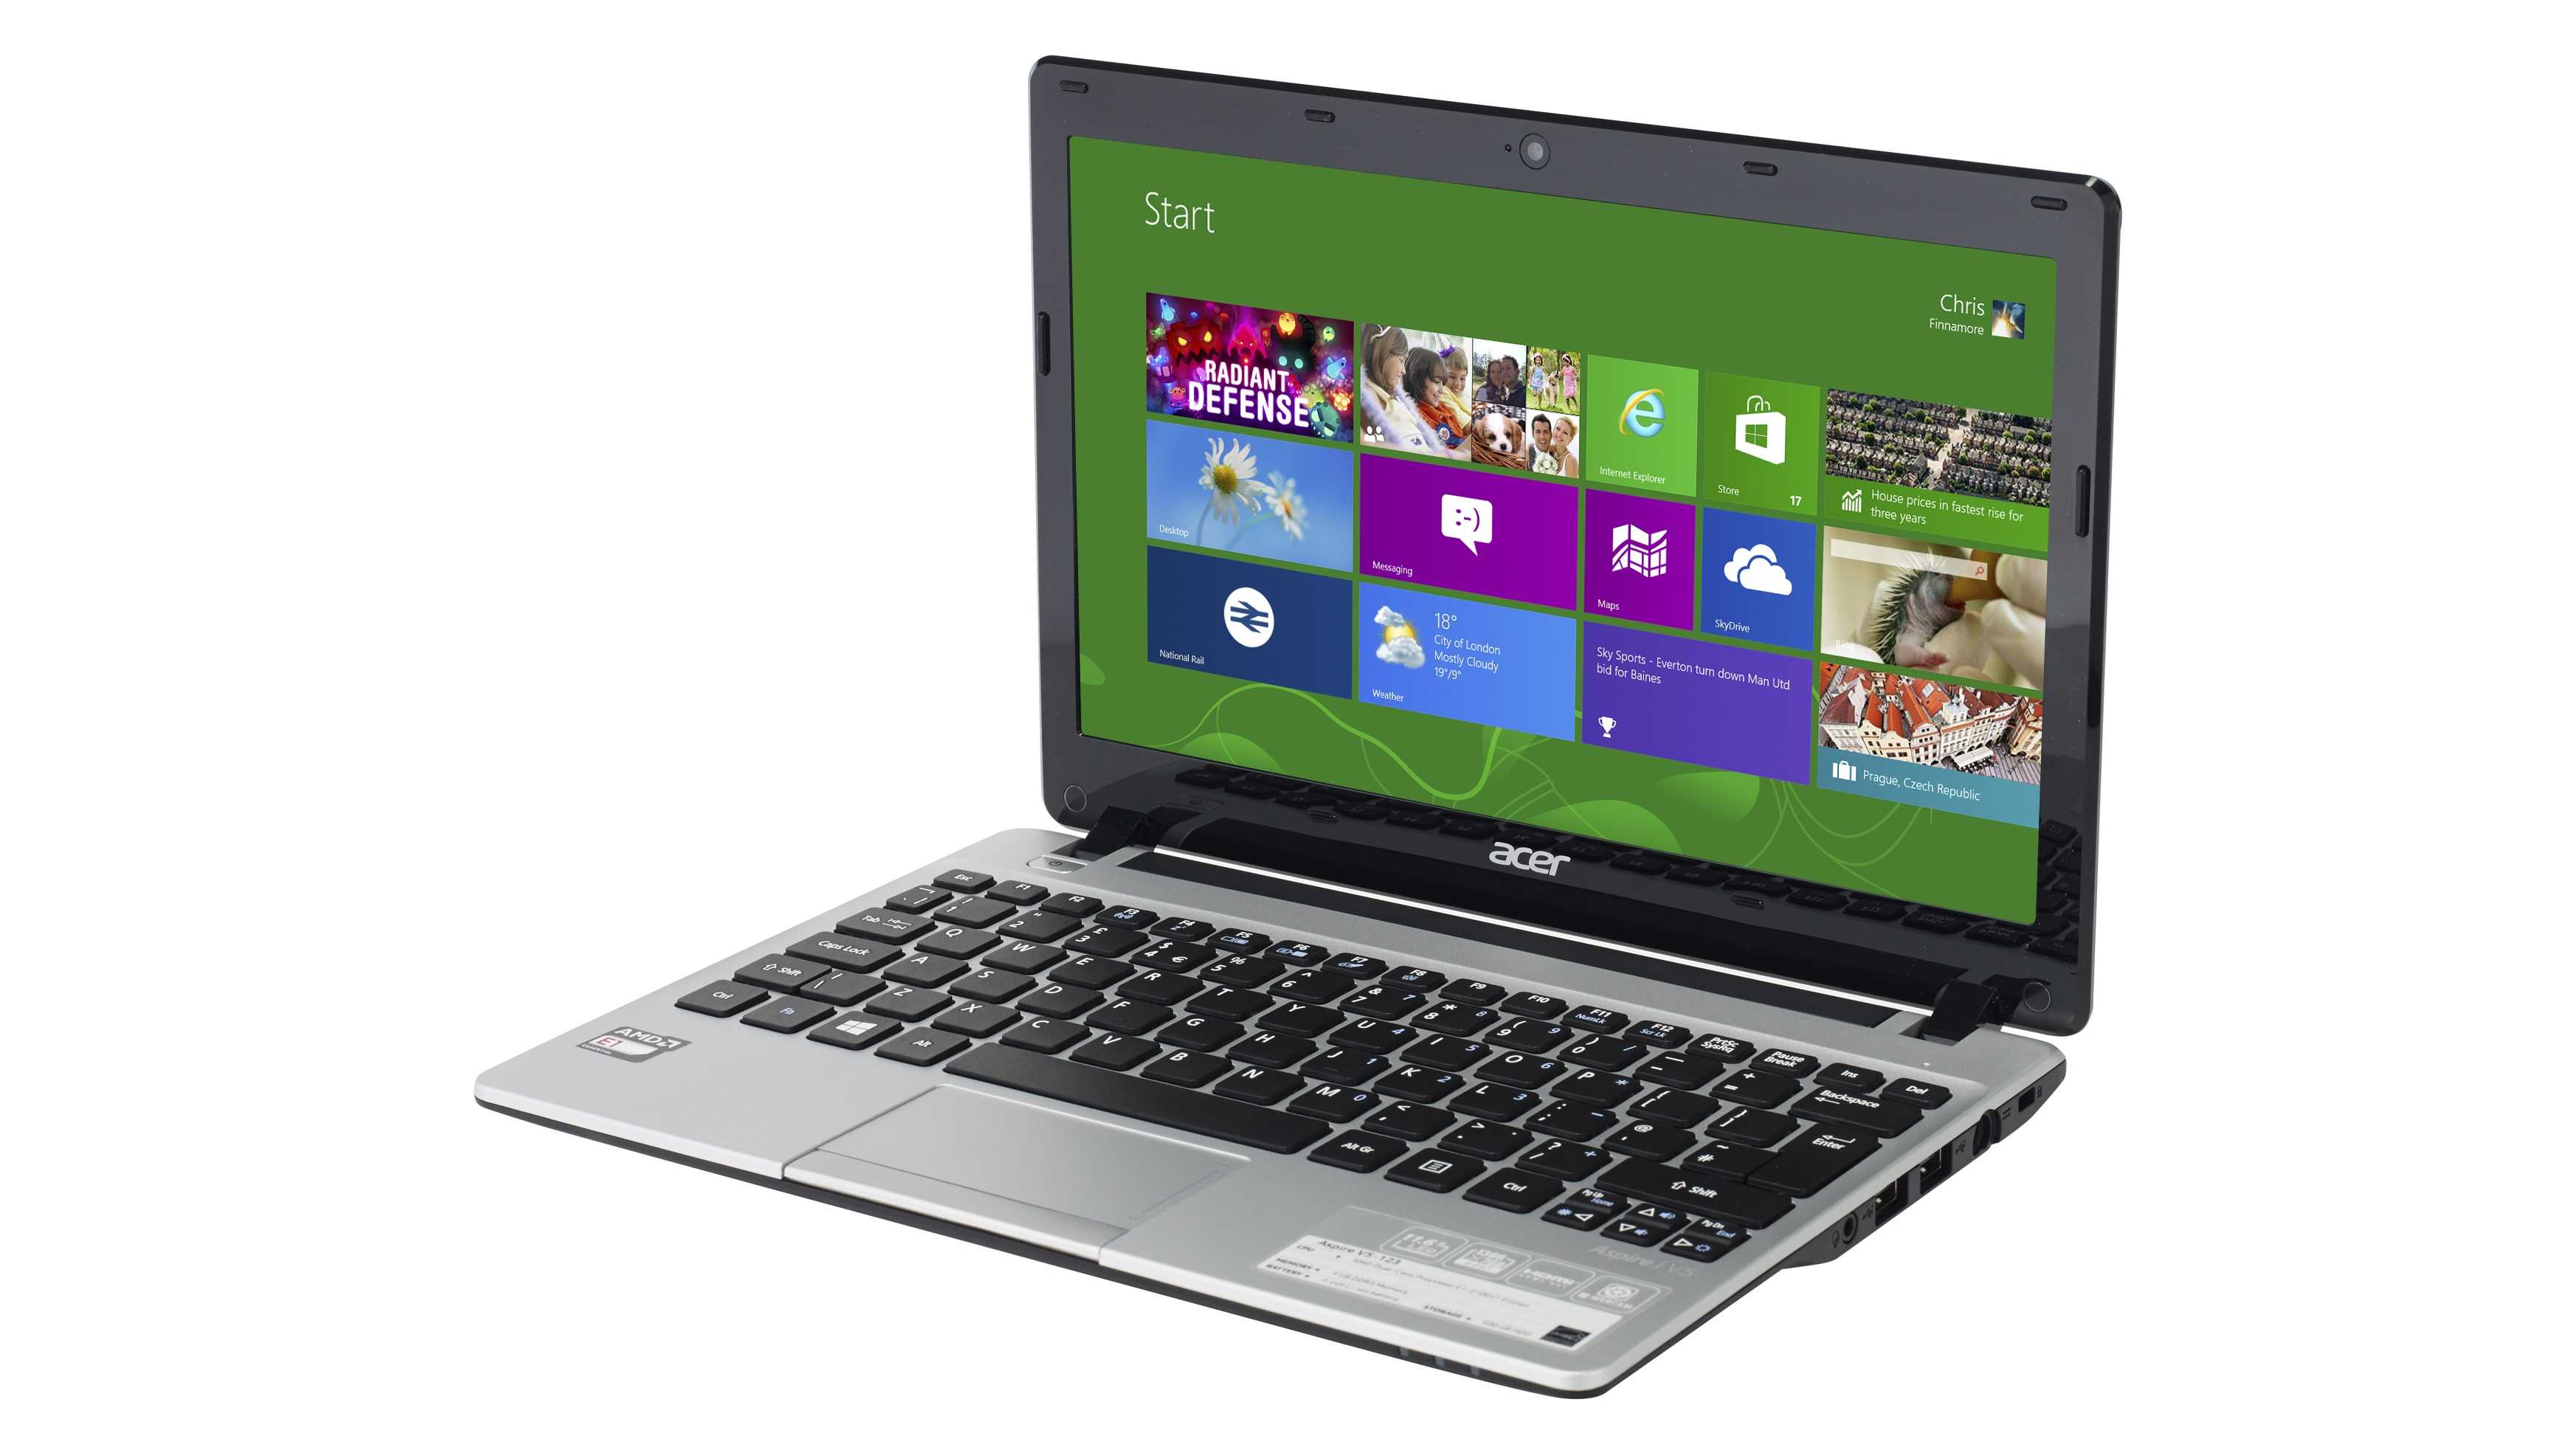 Acer aspire v5-123-12104g50n (e1 2100 1000 mhz/11.6"/1366x768/4gb/500gb/dvd нет/amd radeon hd 8210/wi-fi/bluetooth/без ос) купить по акционной цене , отзывы и обзоры.